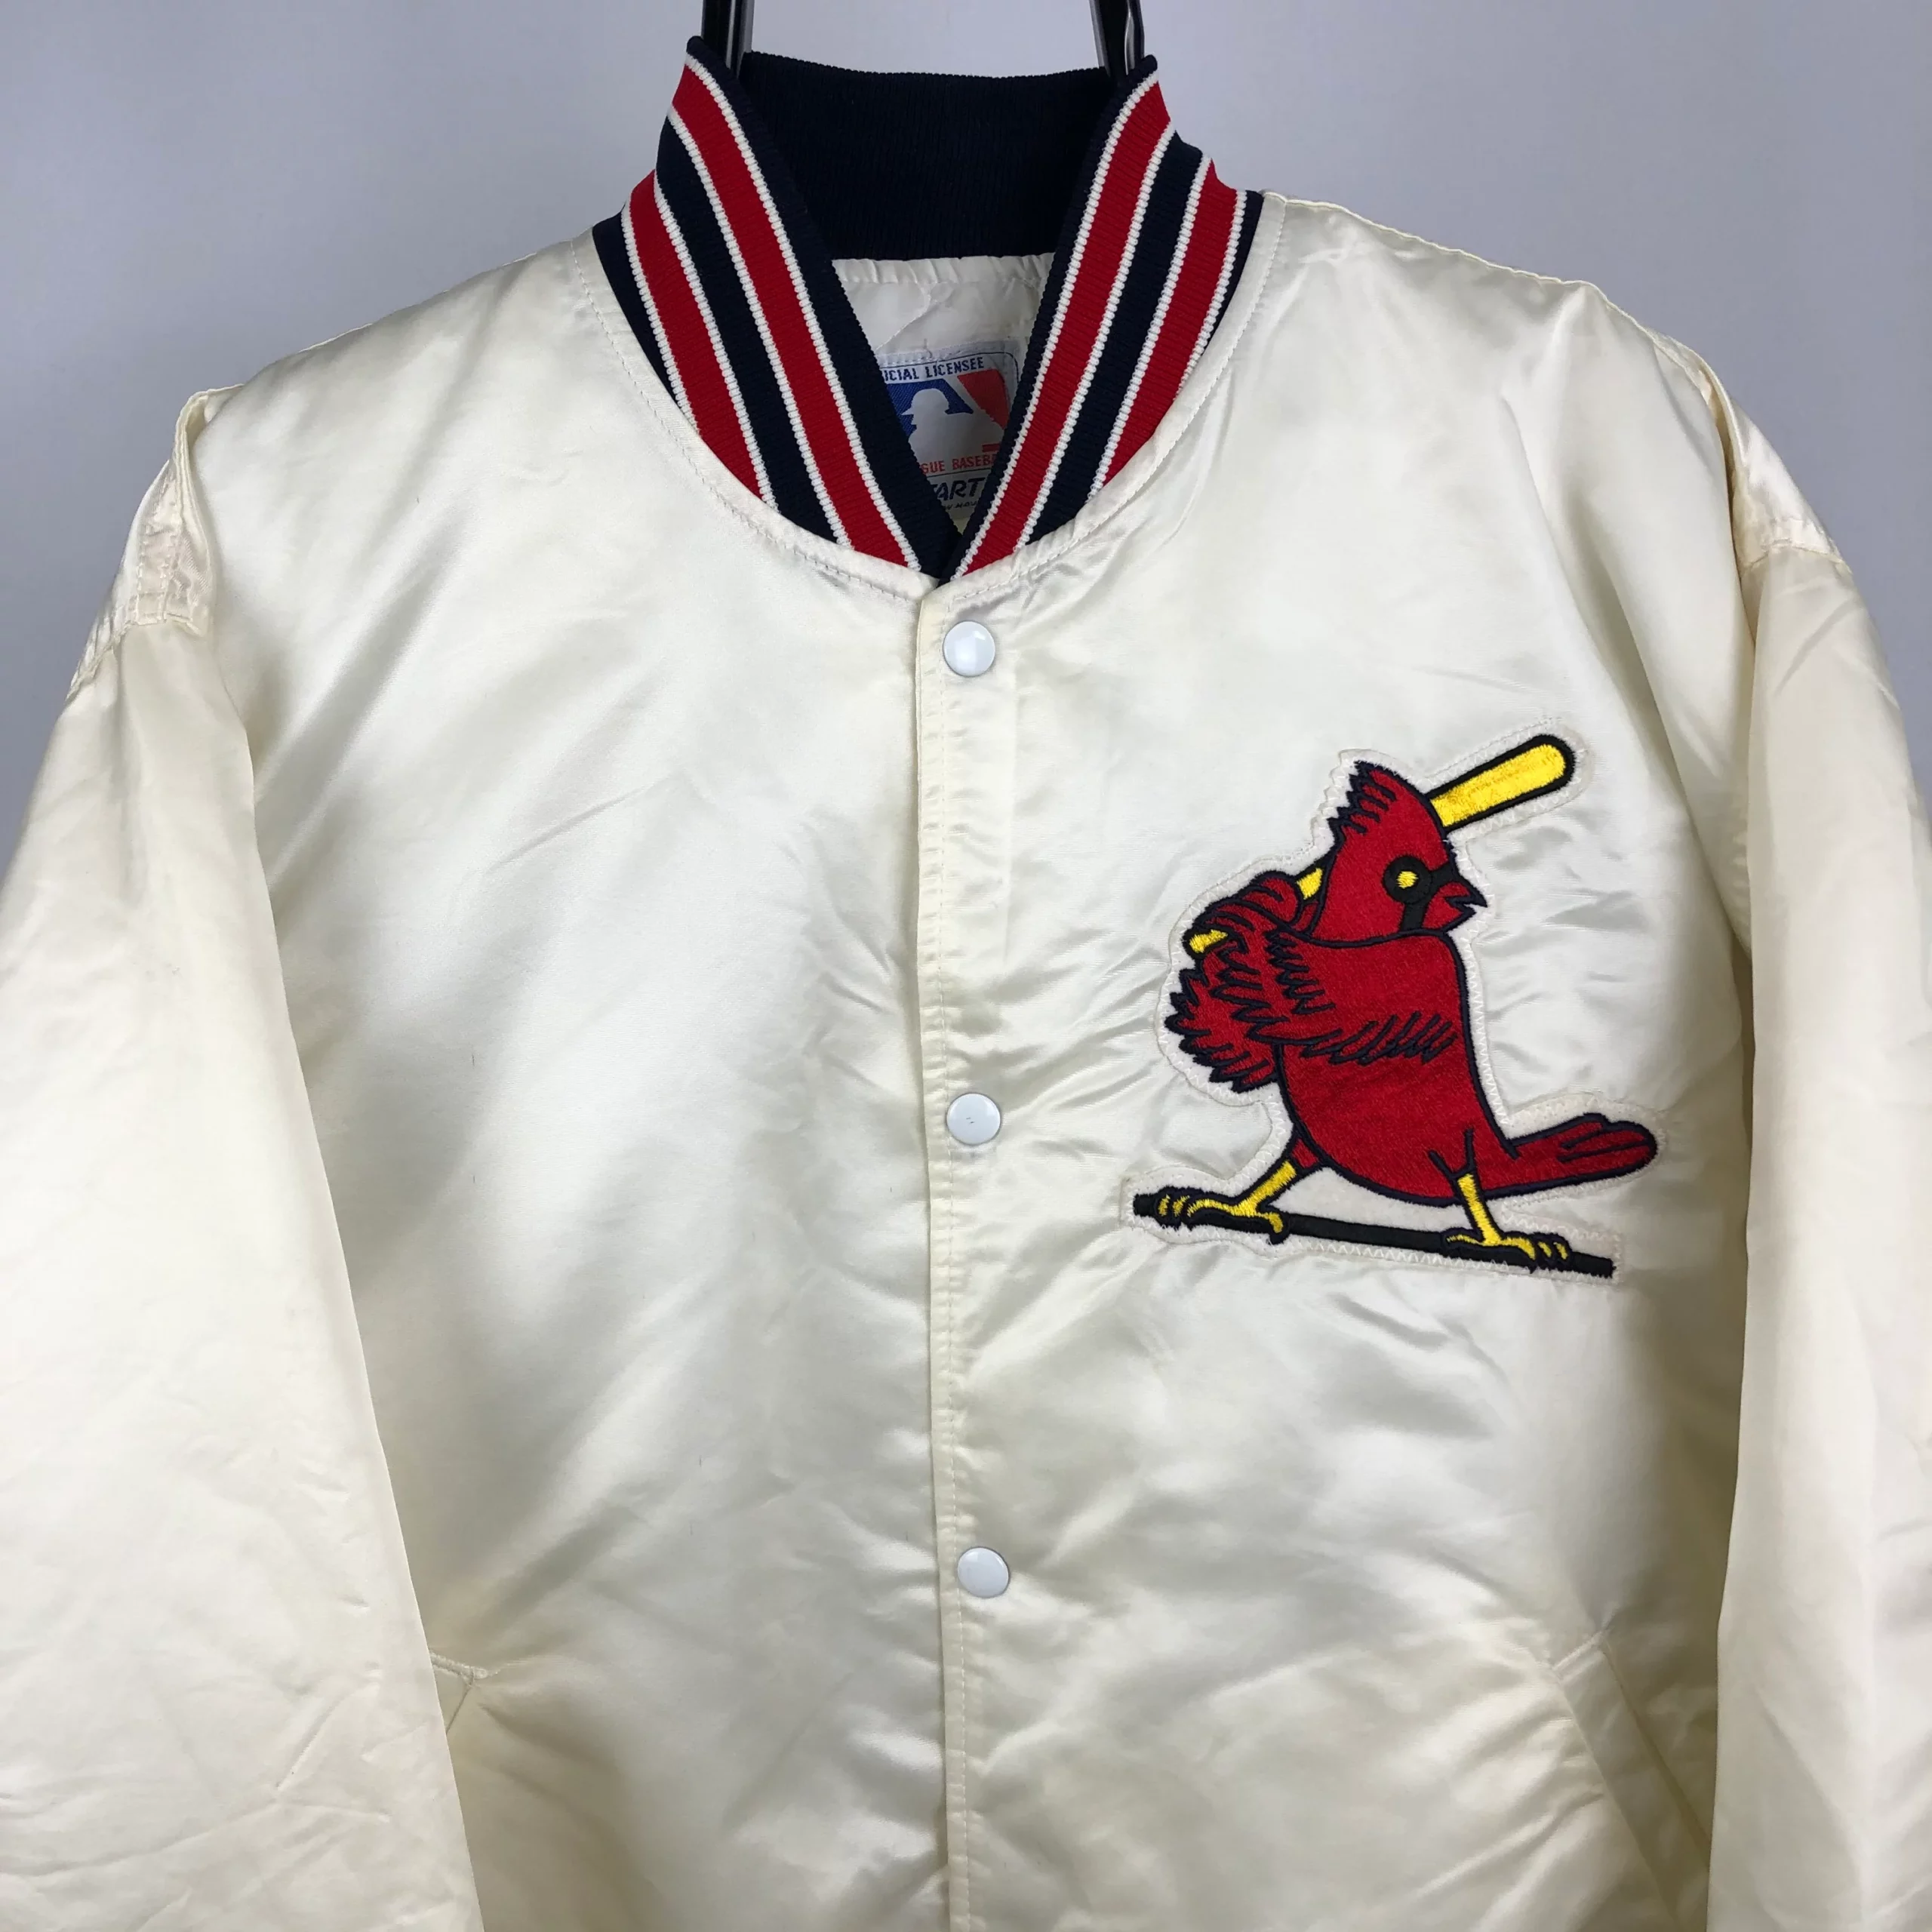 Vintage St. Louis Cardinals Starter Jacket - William Jacket